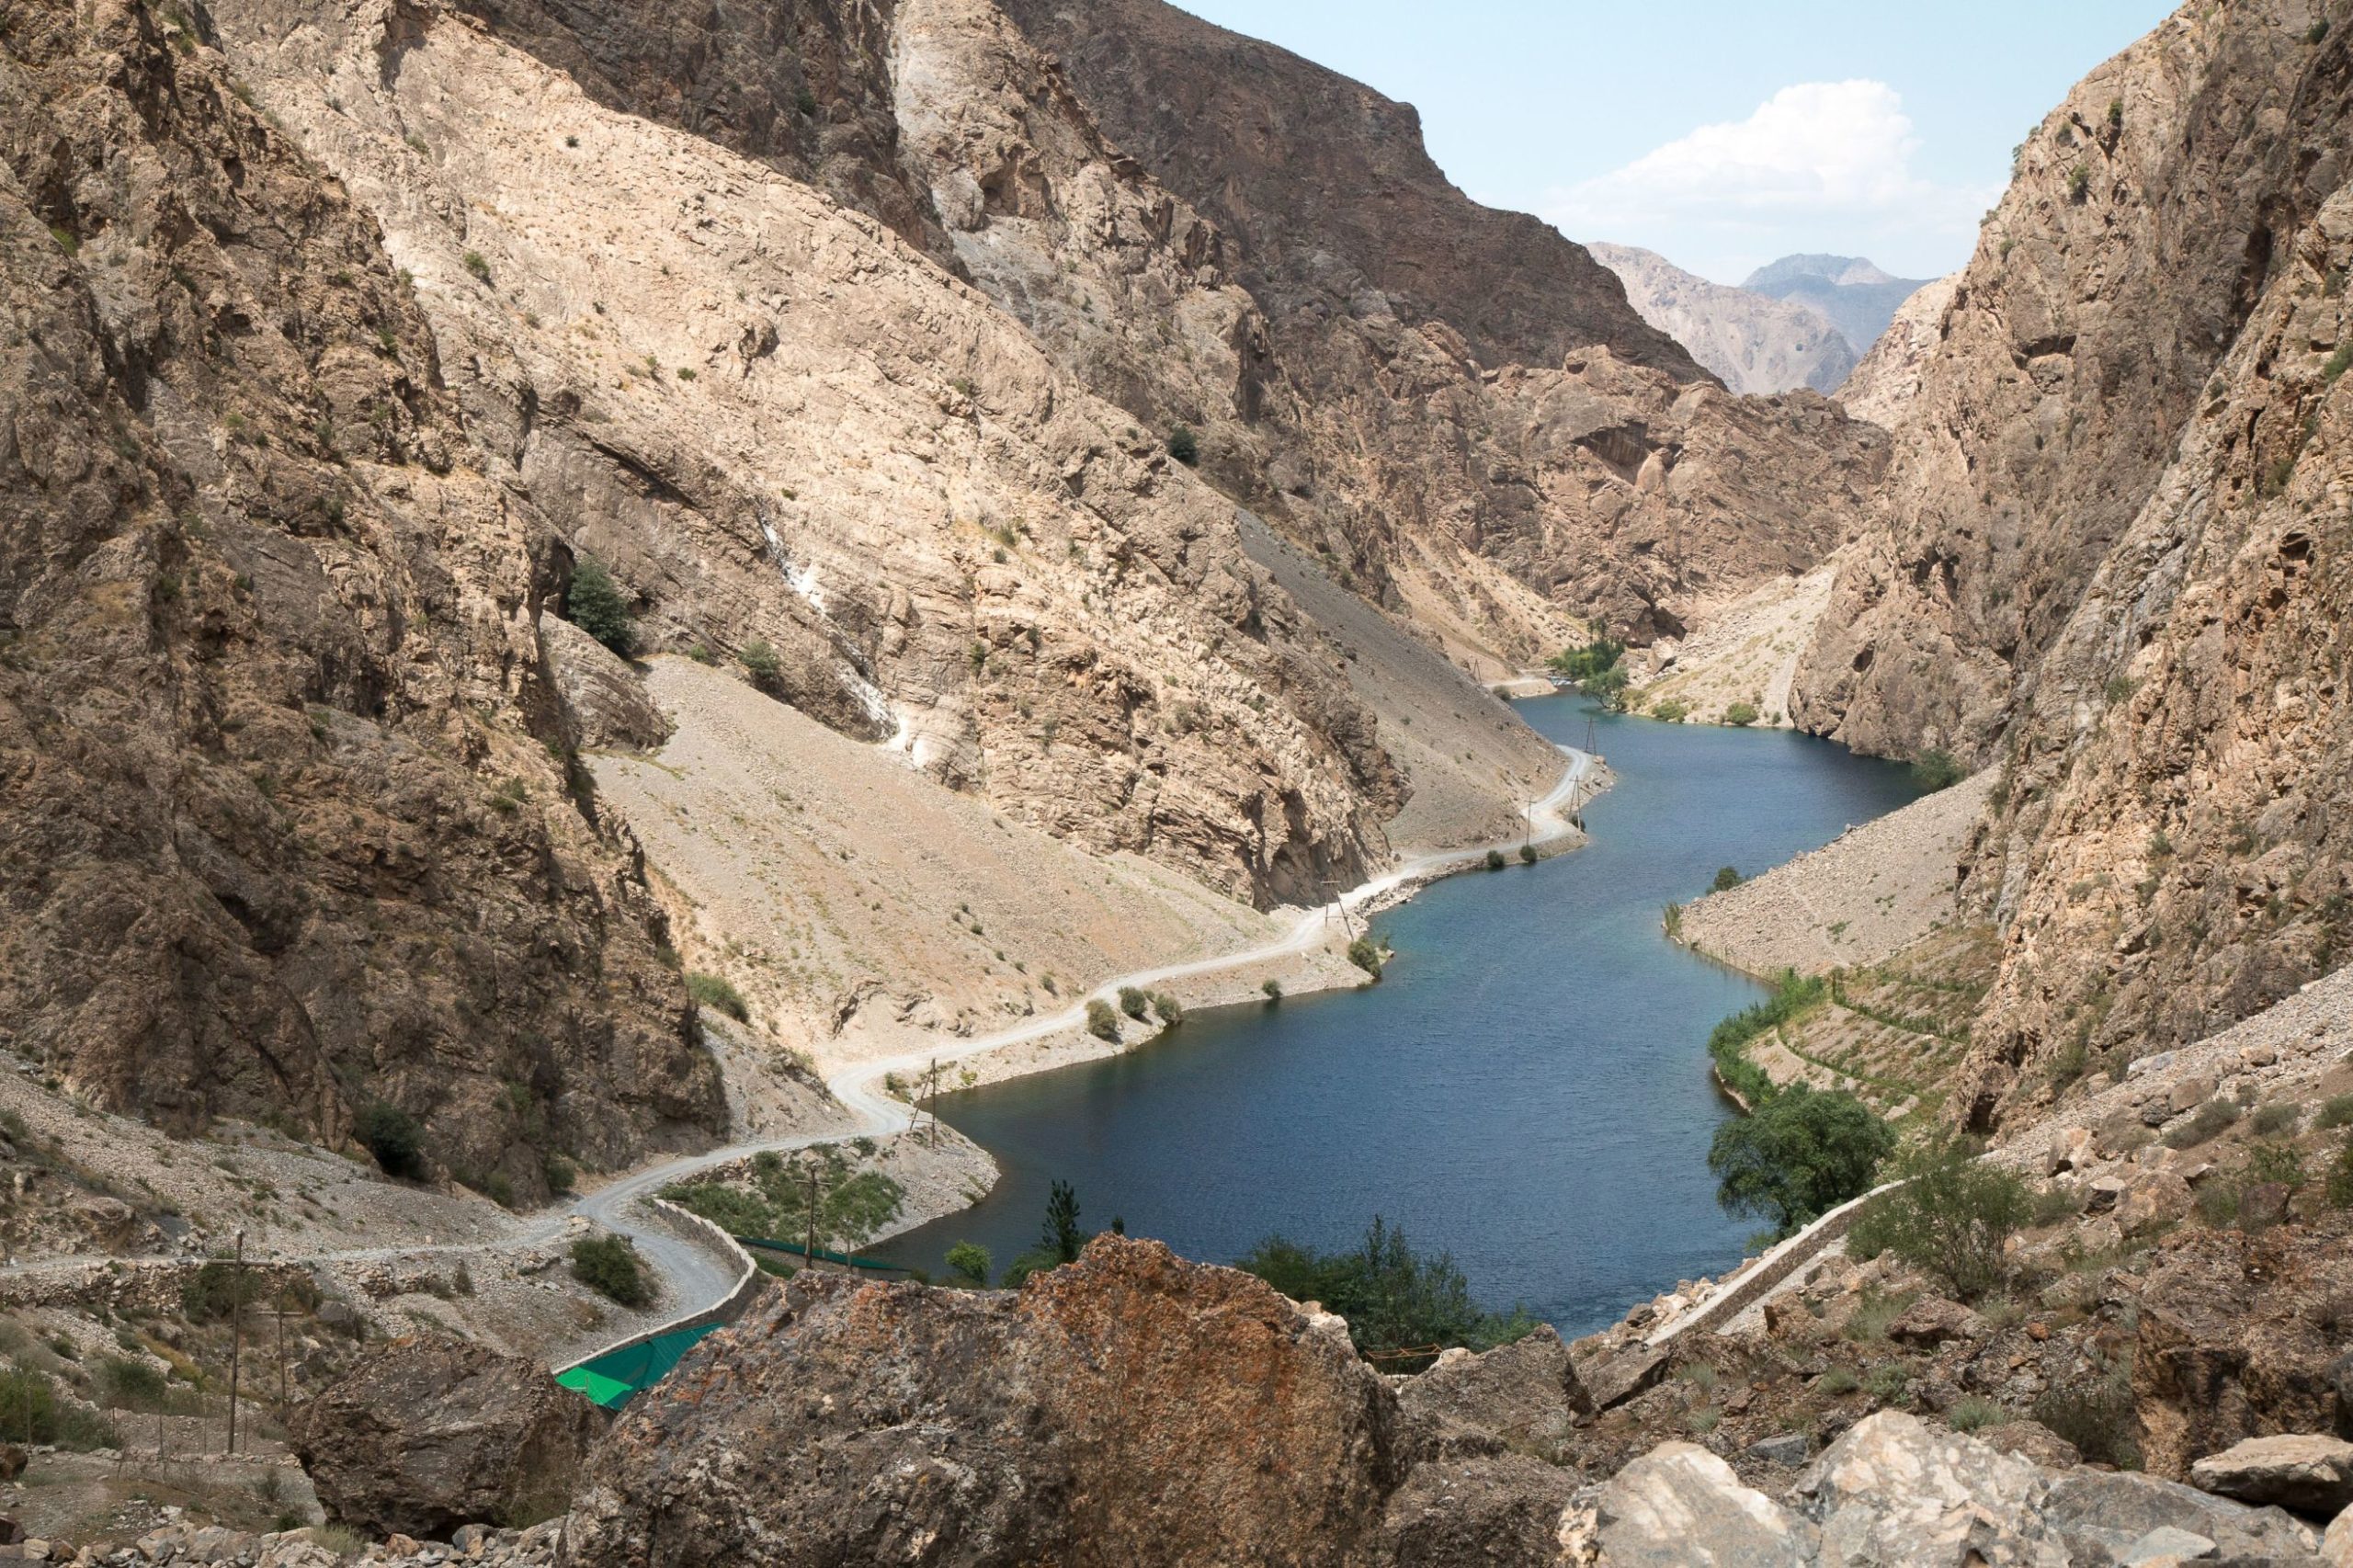 Tadschikistan – Landschaft, Menschen und Kultur auf dem Dach der Welt